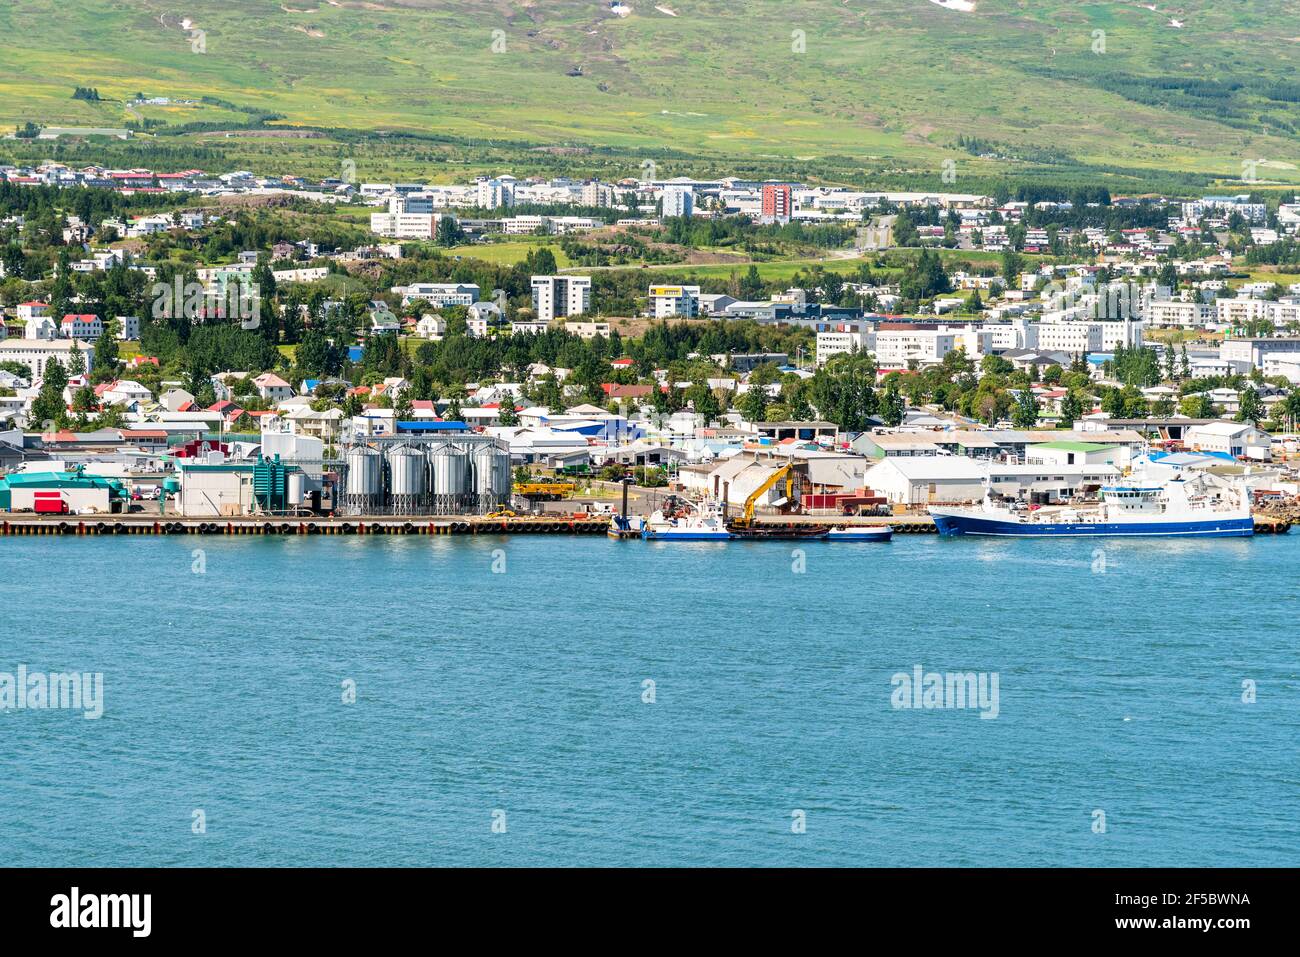 Hafen und Industriepark an einem Fjord an einem sonnigen Frühlingstag. Wohngebäude am Hang sind im Hintergrund. Stockfoto